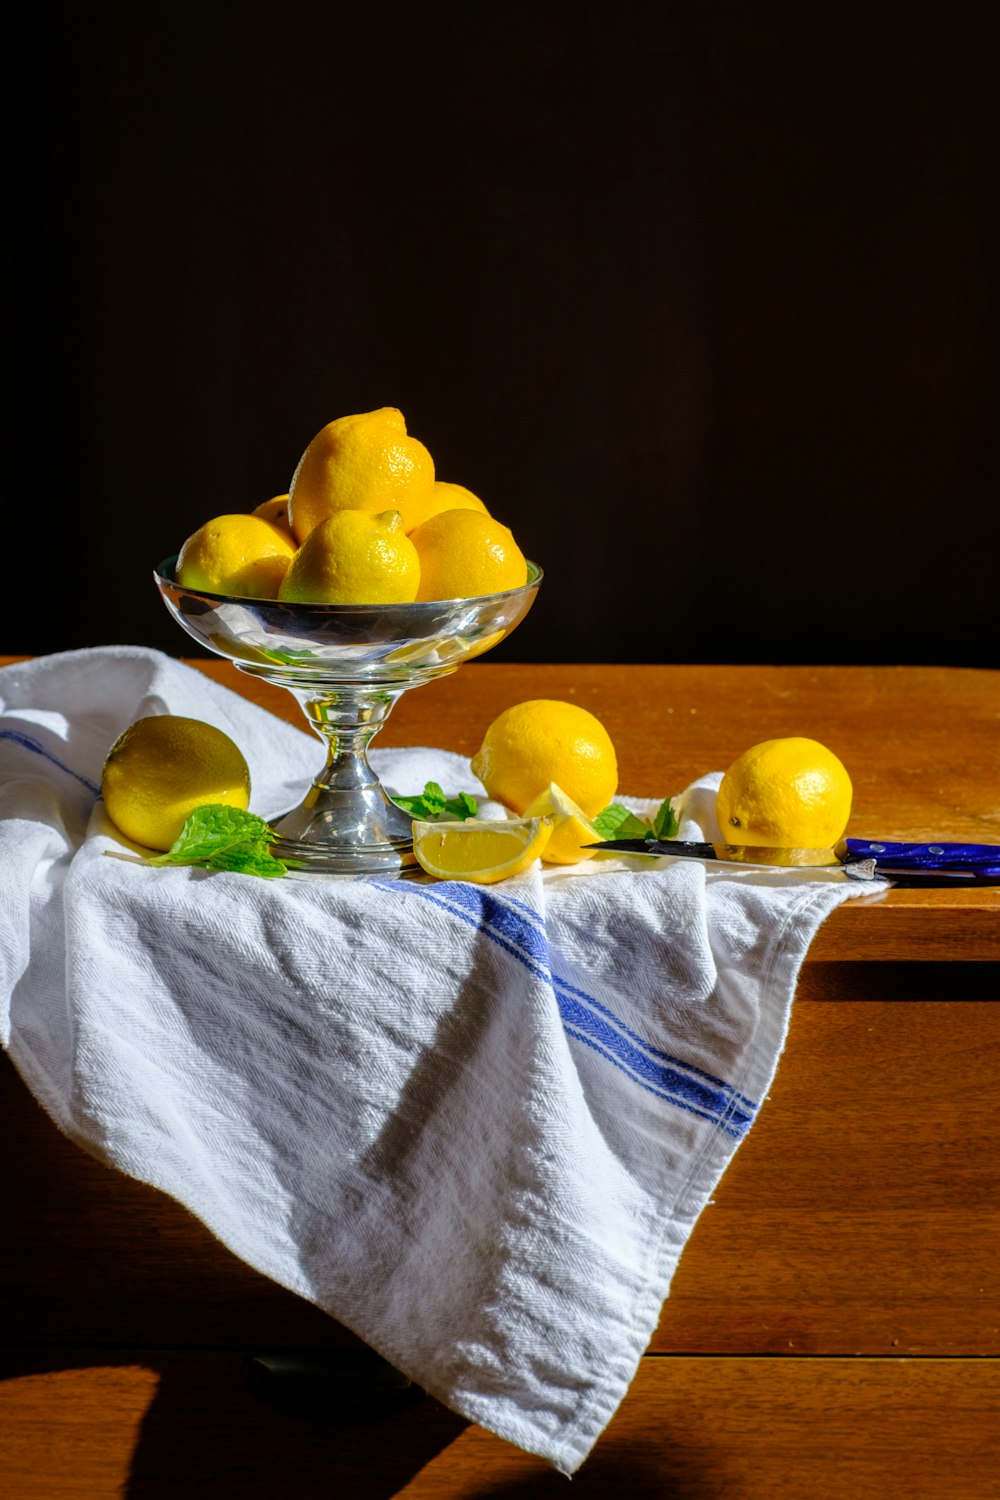 투명 유리 그릇에 노란색 감귤류 과일